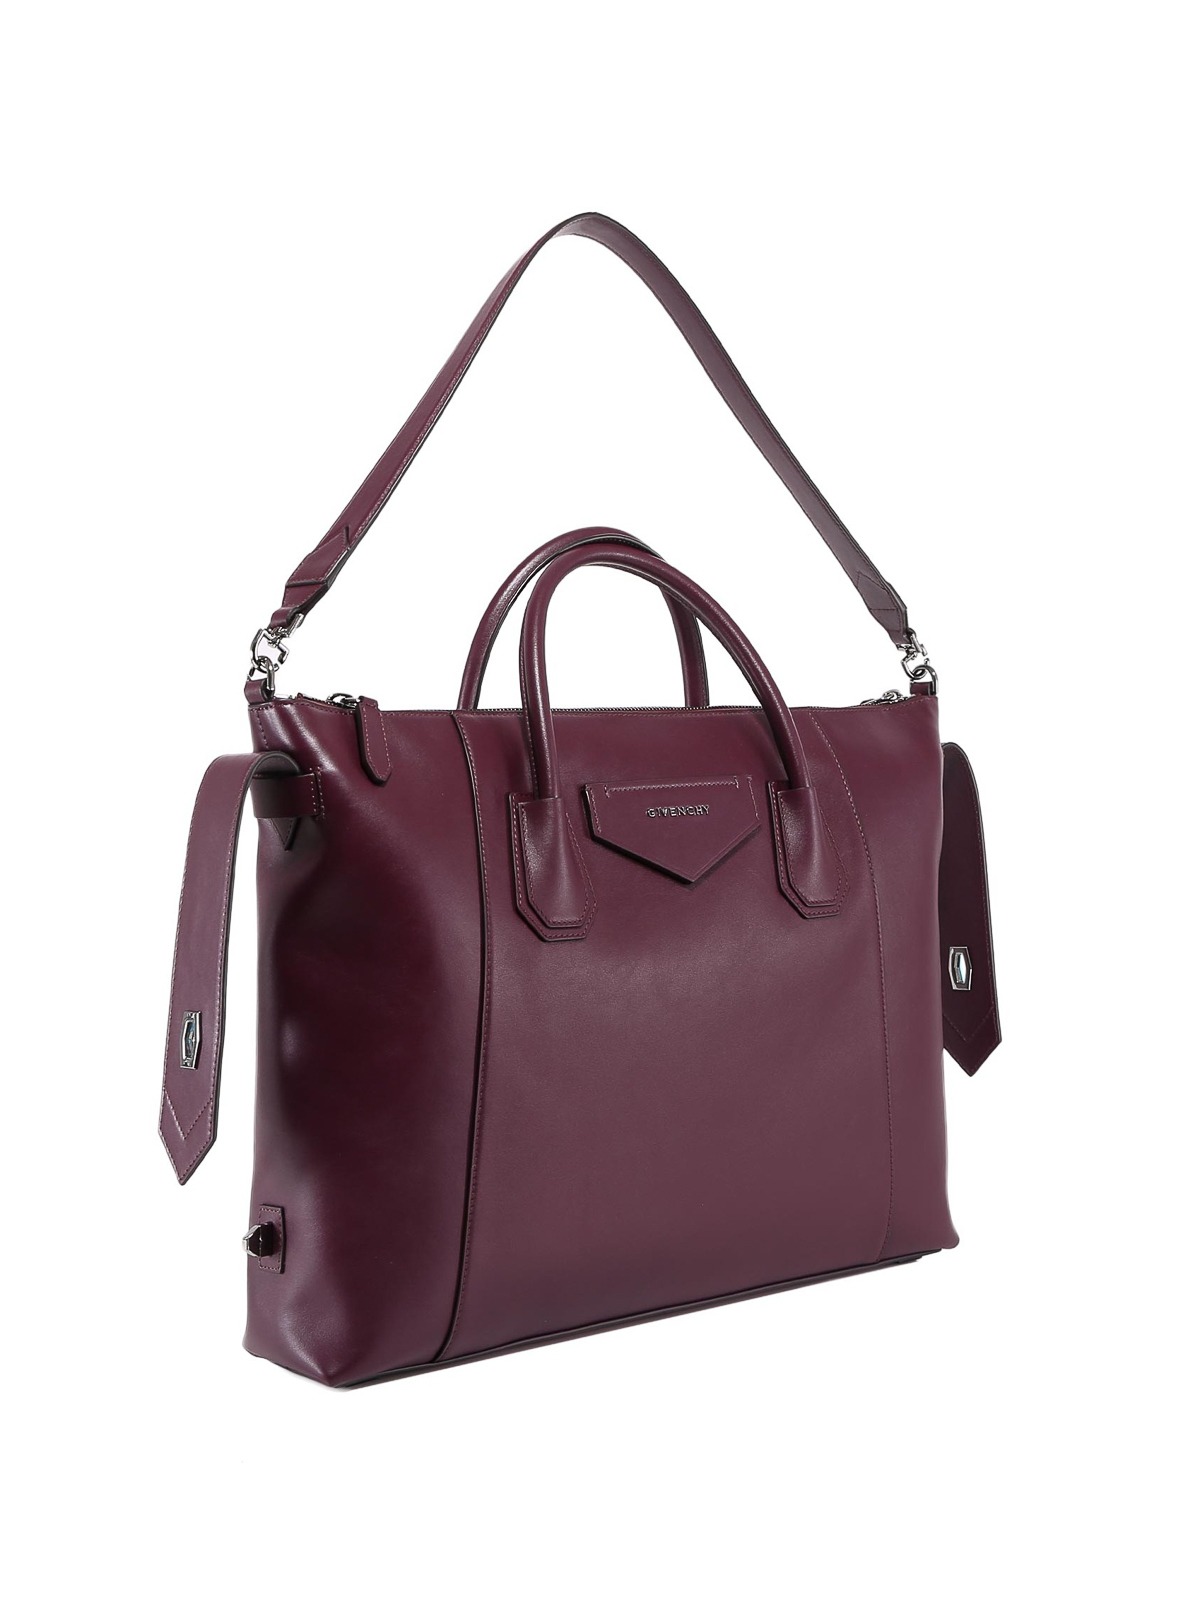 Givenchy Antigona Soft Medium Leather Bag